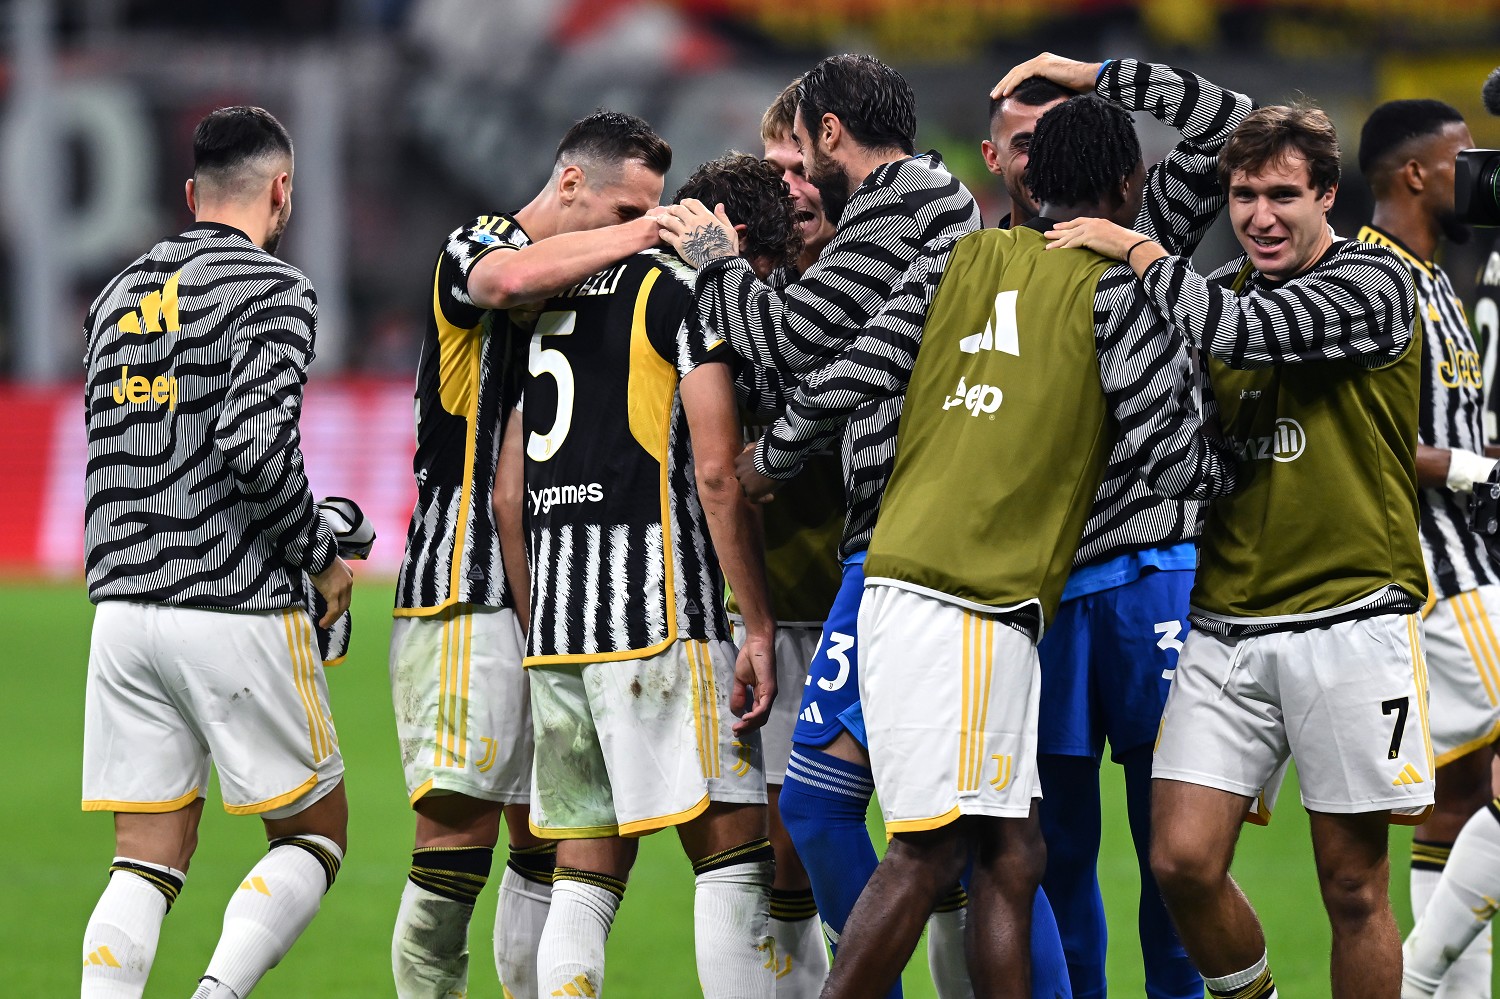 Frosinone-Juventus, le formazioni ufficiali: Le scelte di Allegri davanti |  Sport e Vai